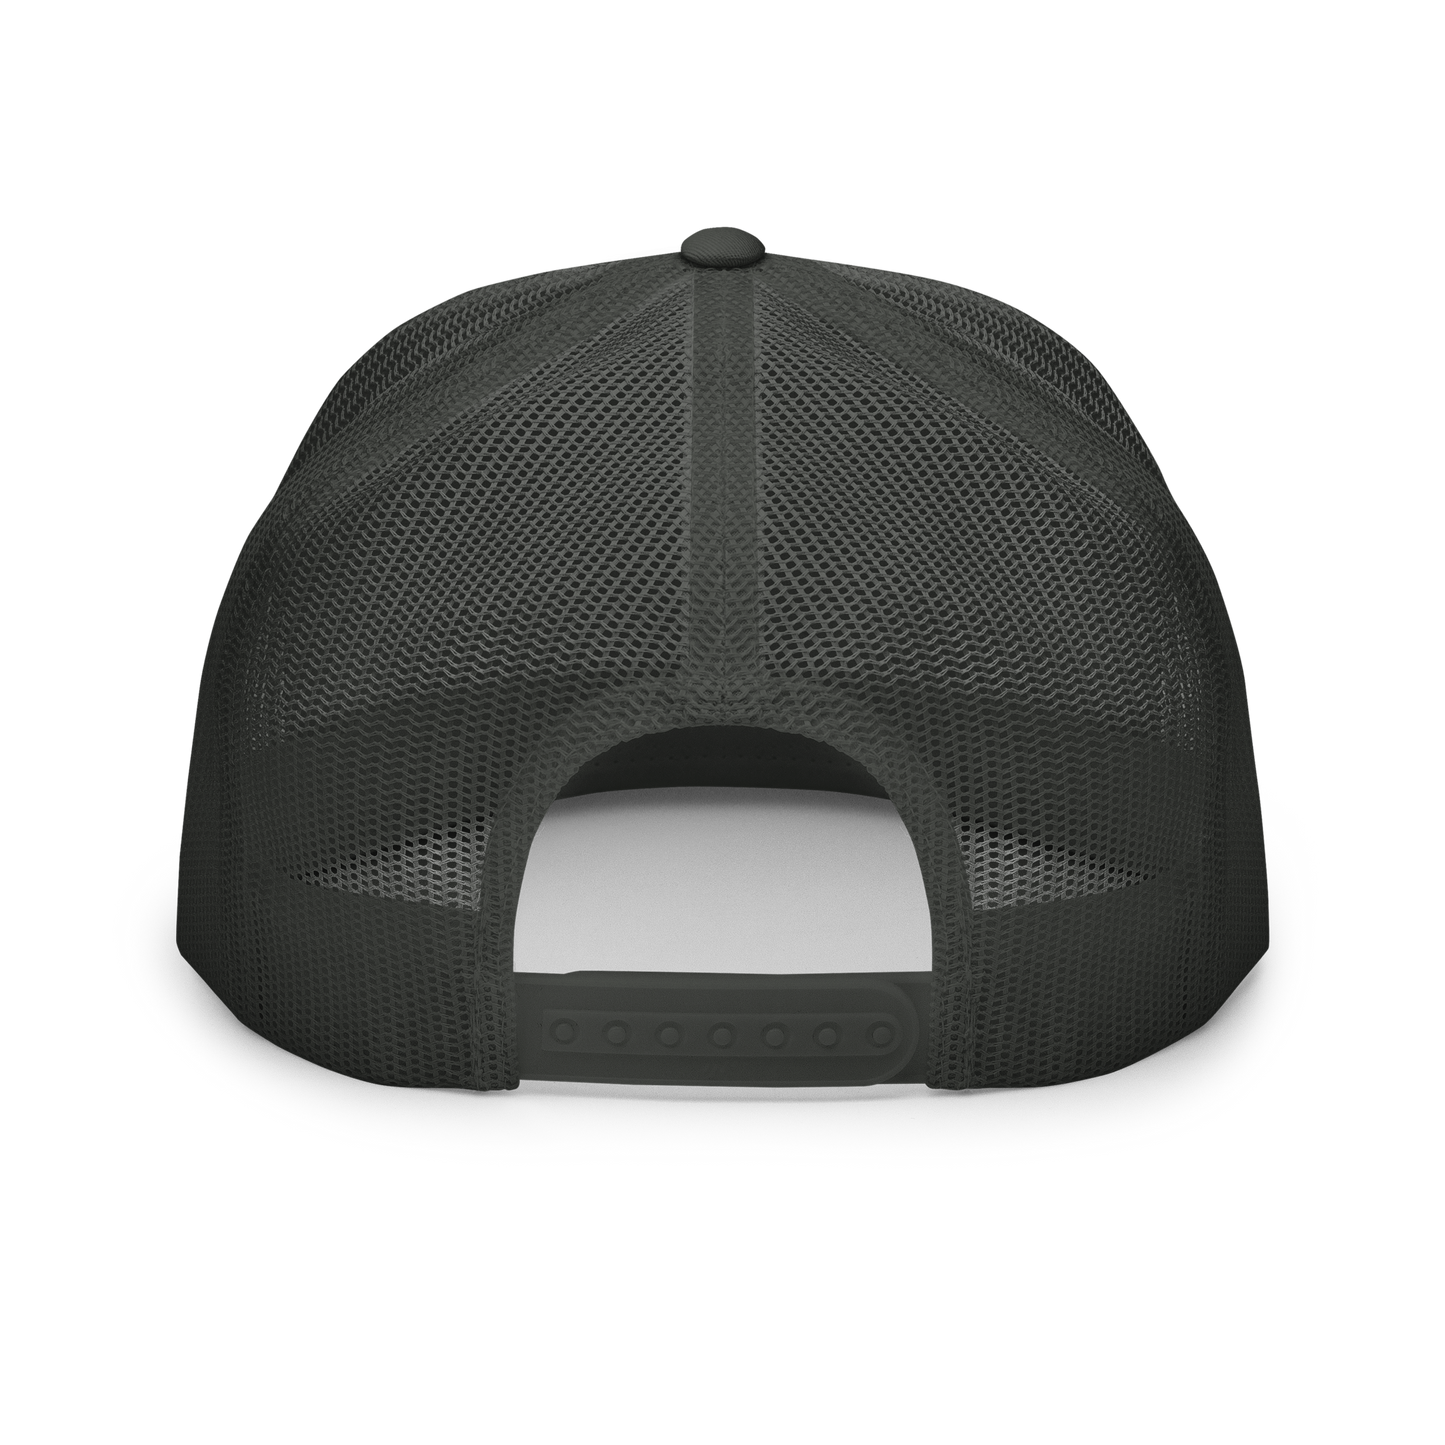 K2 TRUCKER CAP